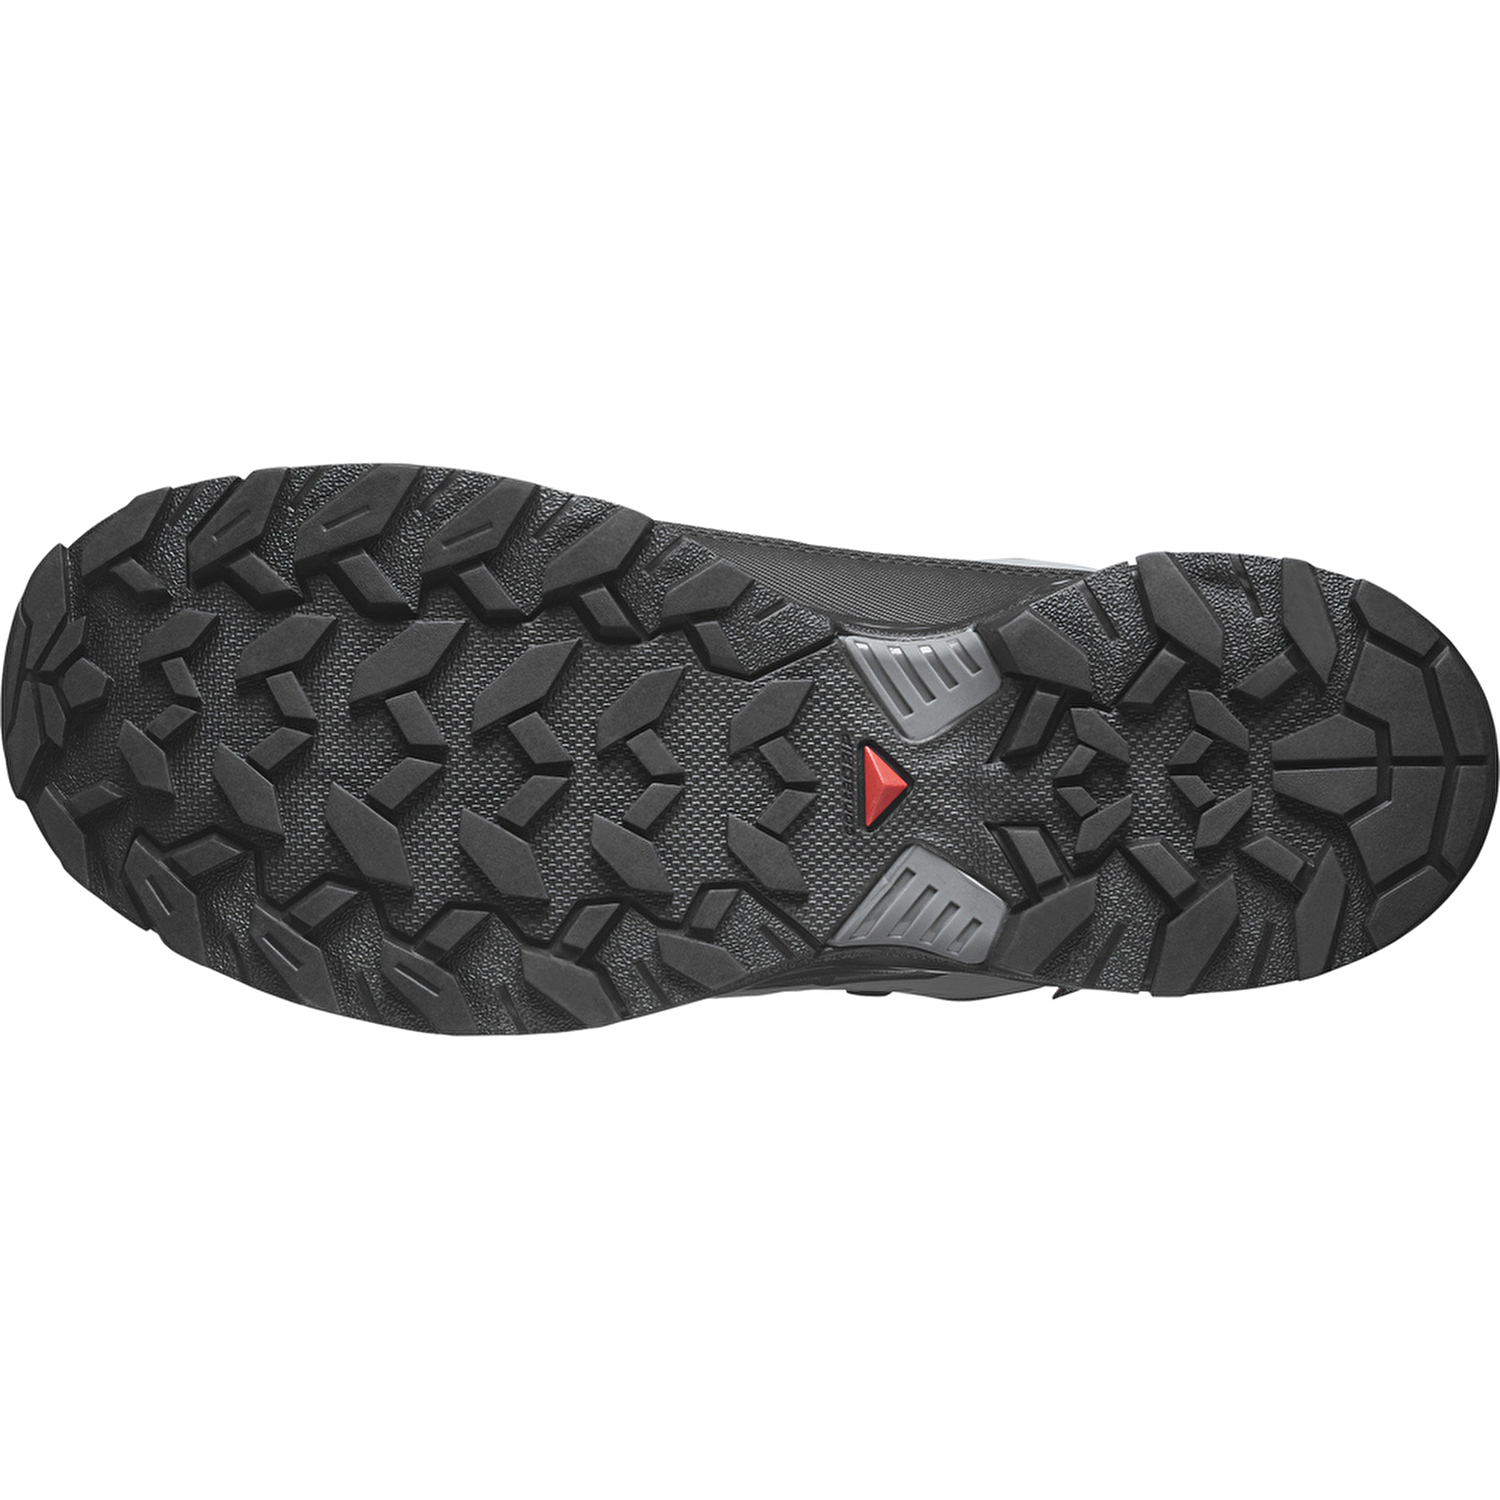 Salomon X Ultra 360 Gtx Erkek Outdoor Ayakkabı